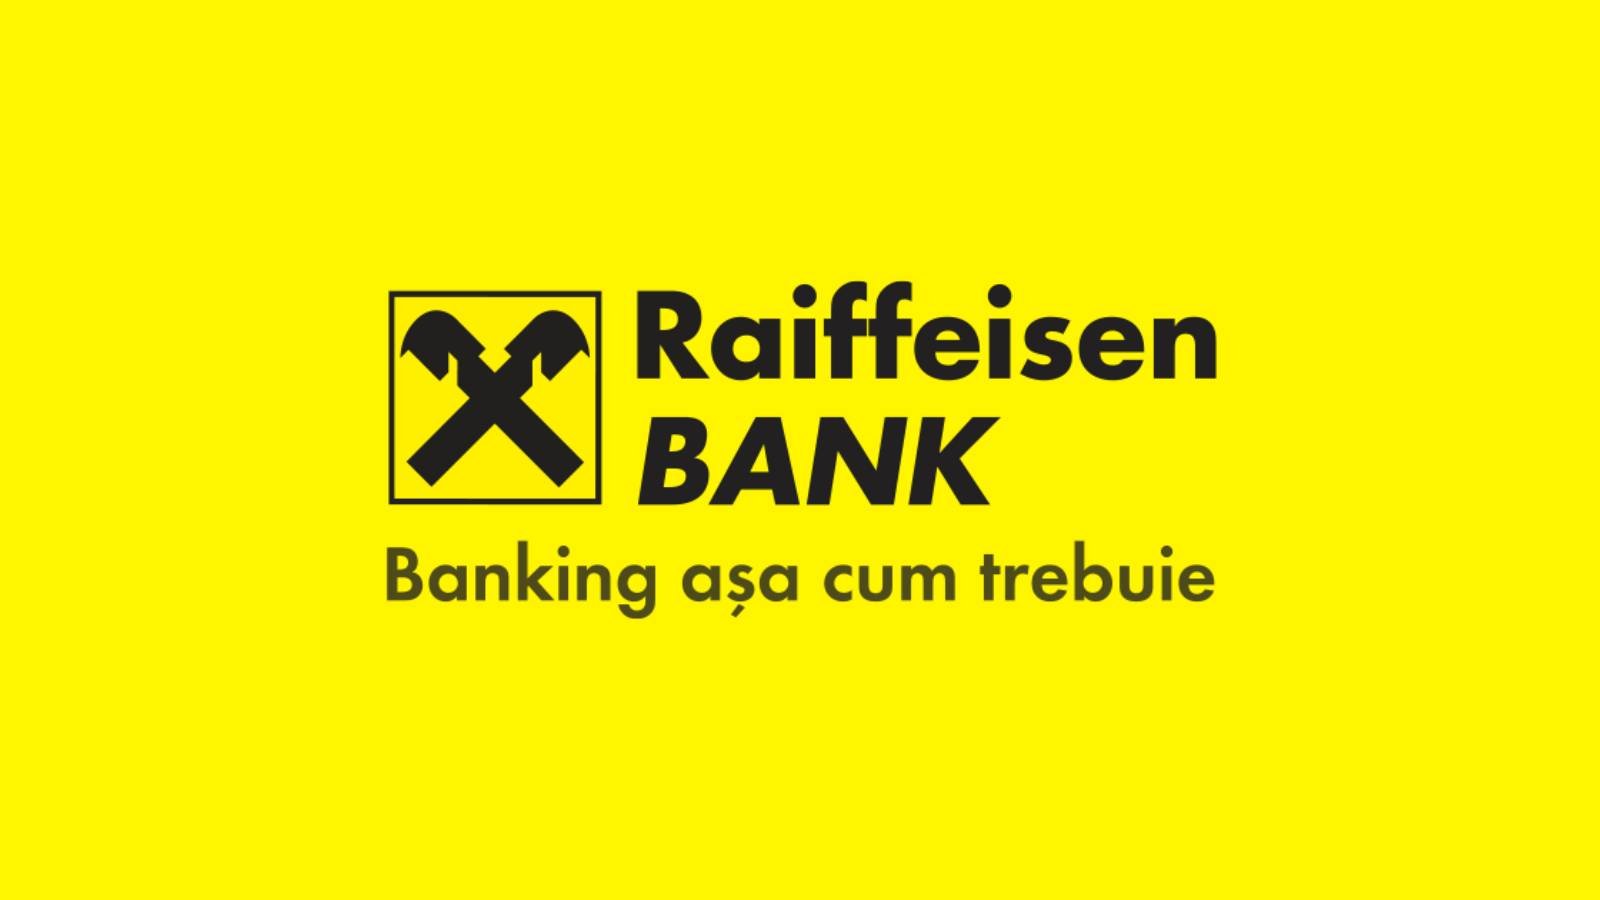 Banca Raiffeisen Effetto delle misure URGENTI applicate in Romania